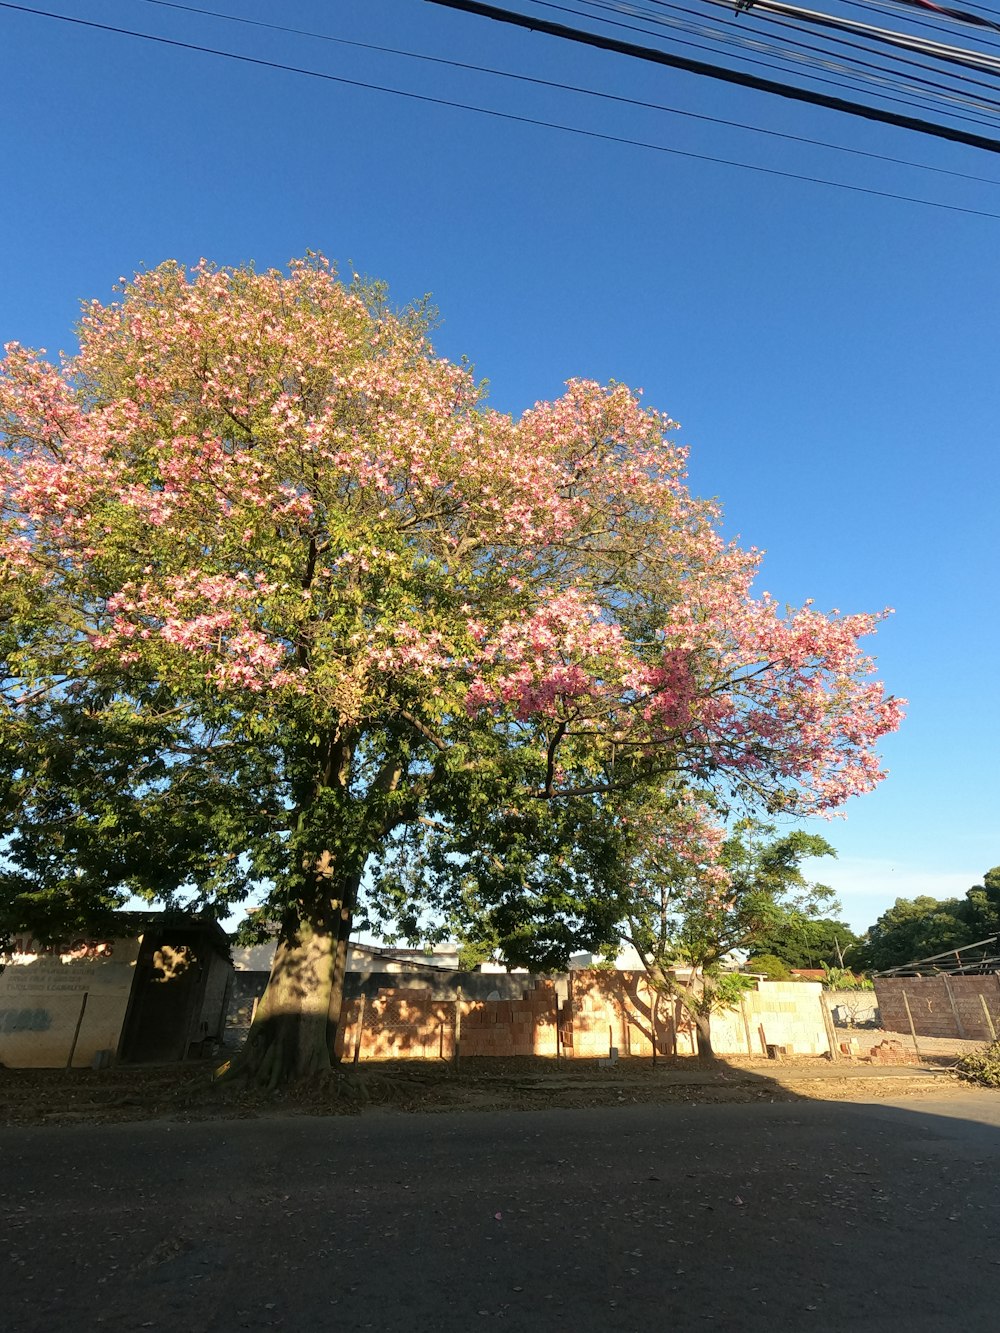 Un albero con fiori rosa nel mezzo di una strada